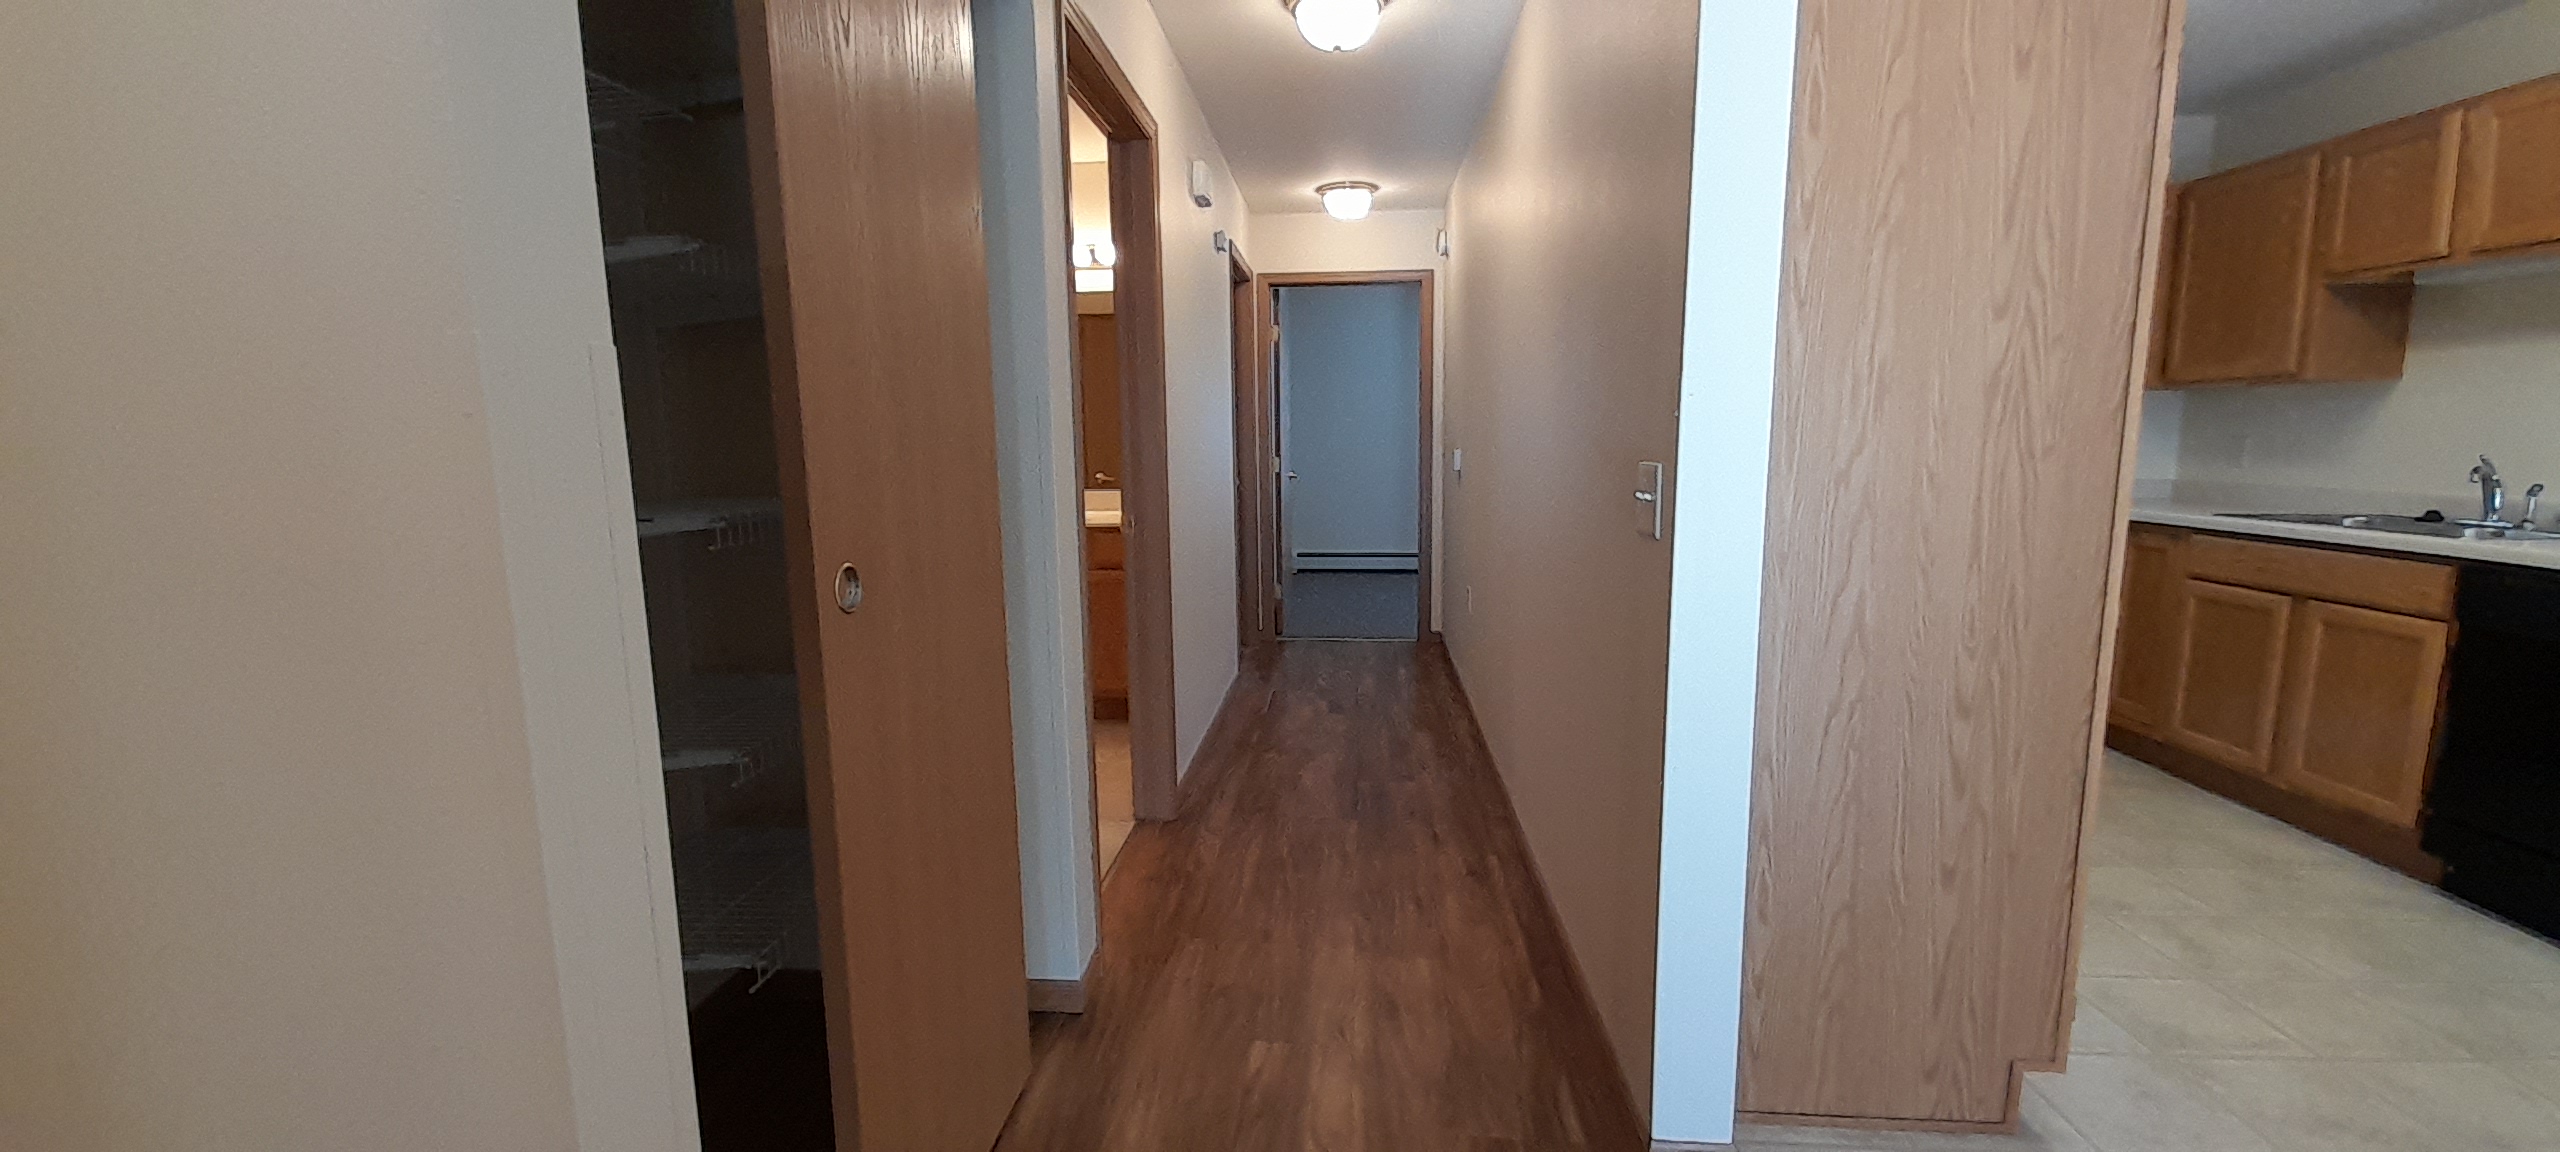 Iola SV hallway looking toward bedrooms